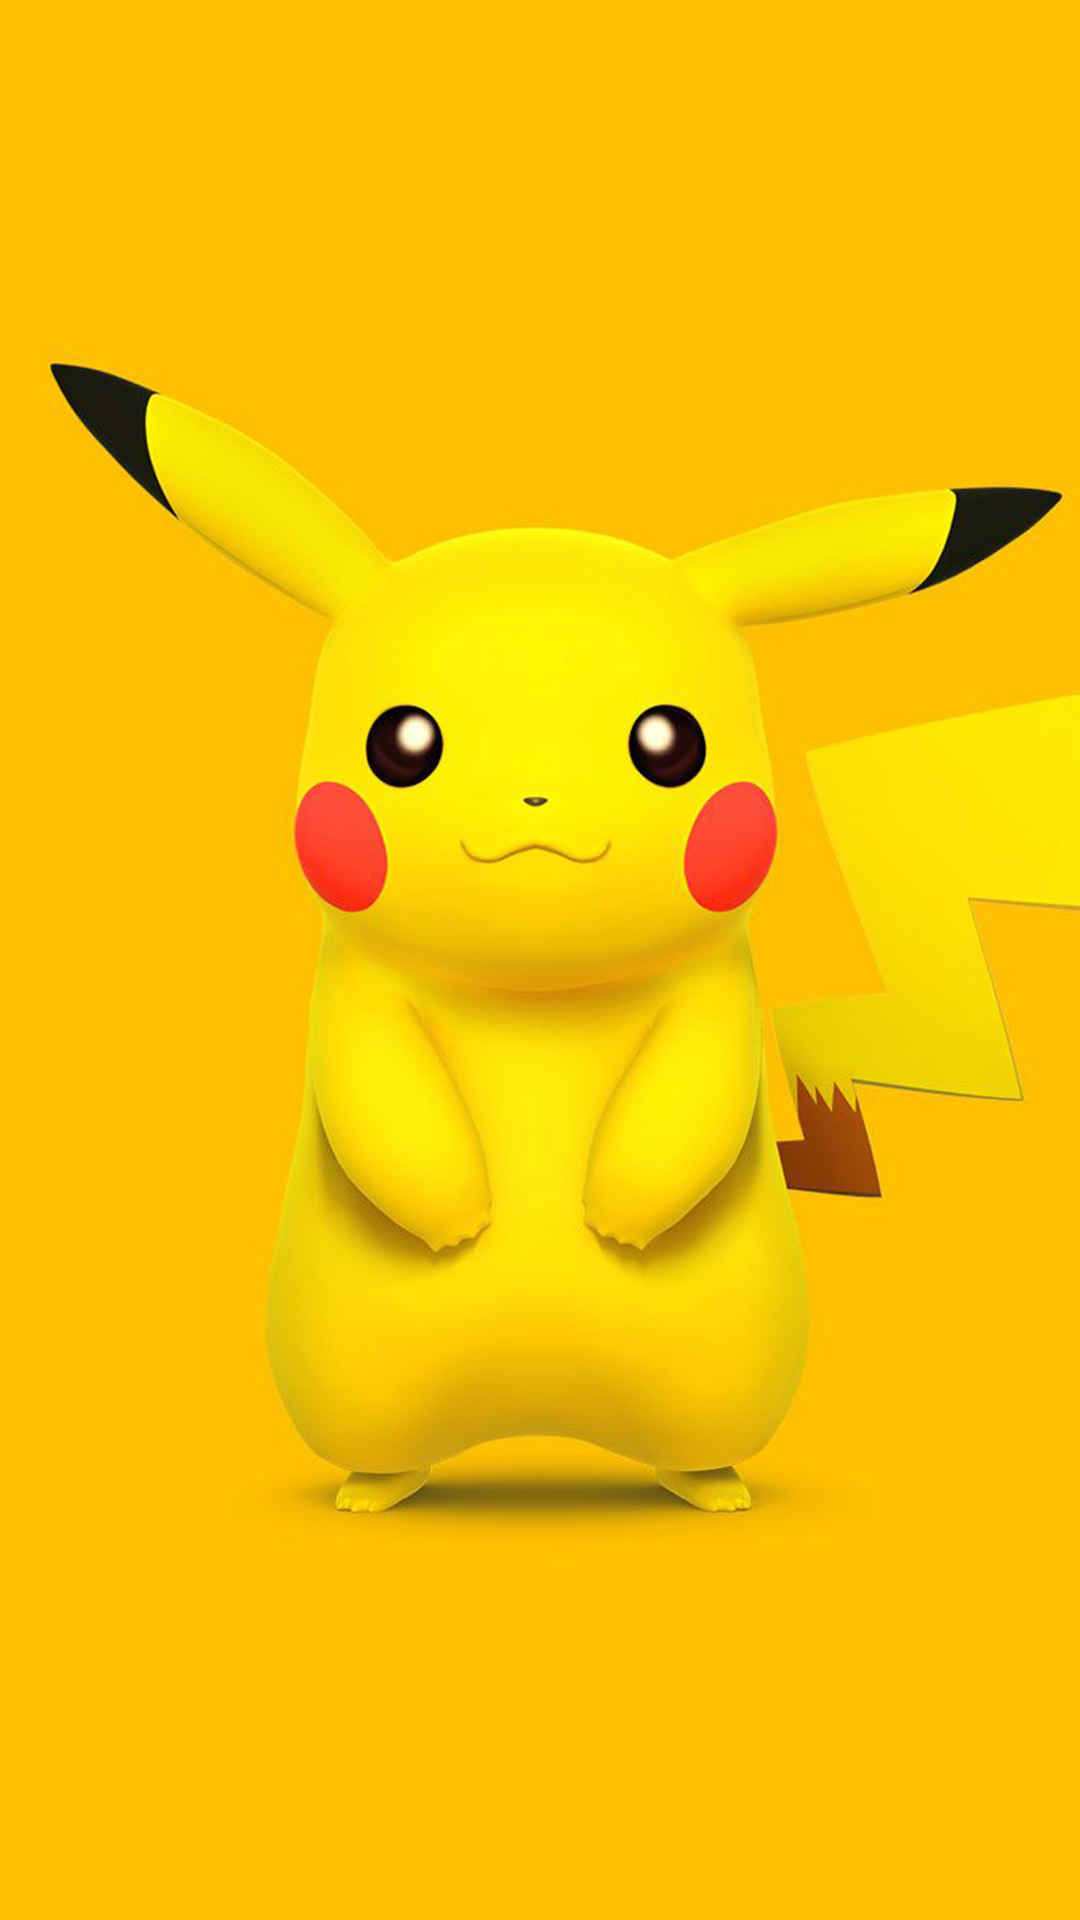 Cute Pokemon Iphone Wallpapers Hd Free Download Pixelstalk Net